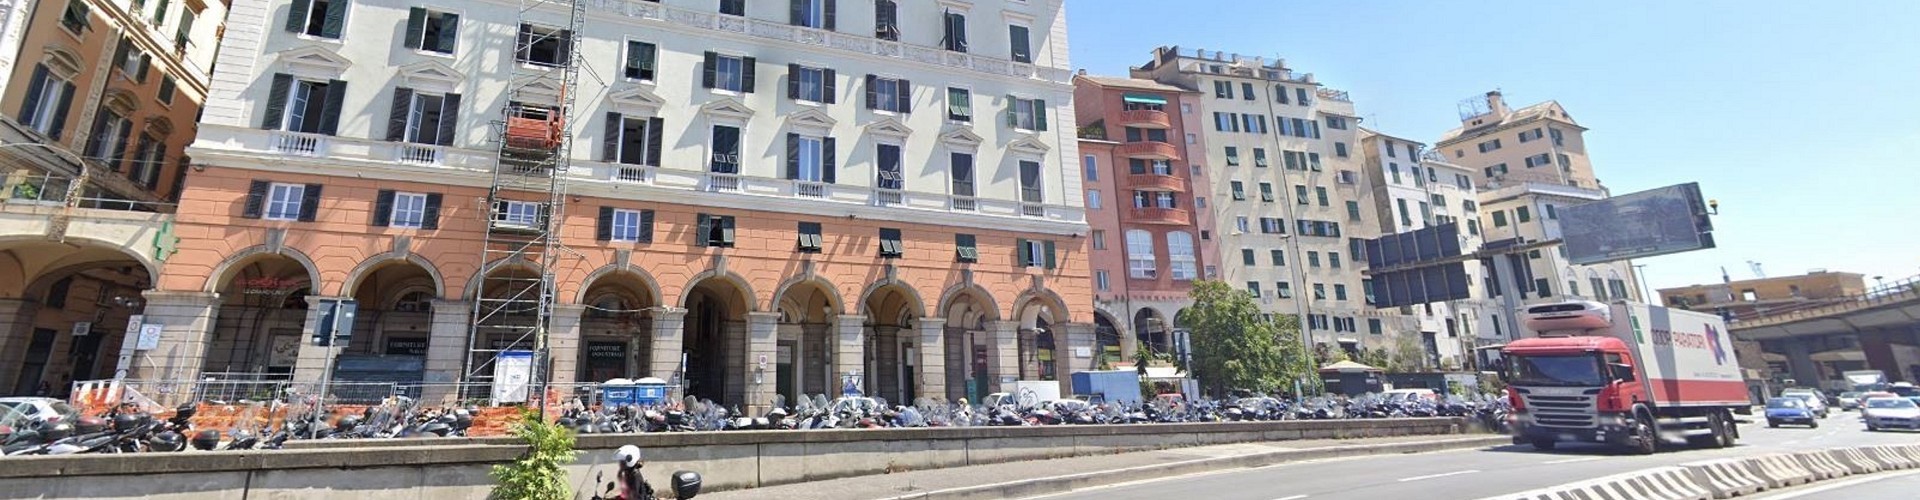 Immobile ad uso Polizia Locale - Genova